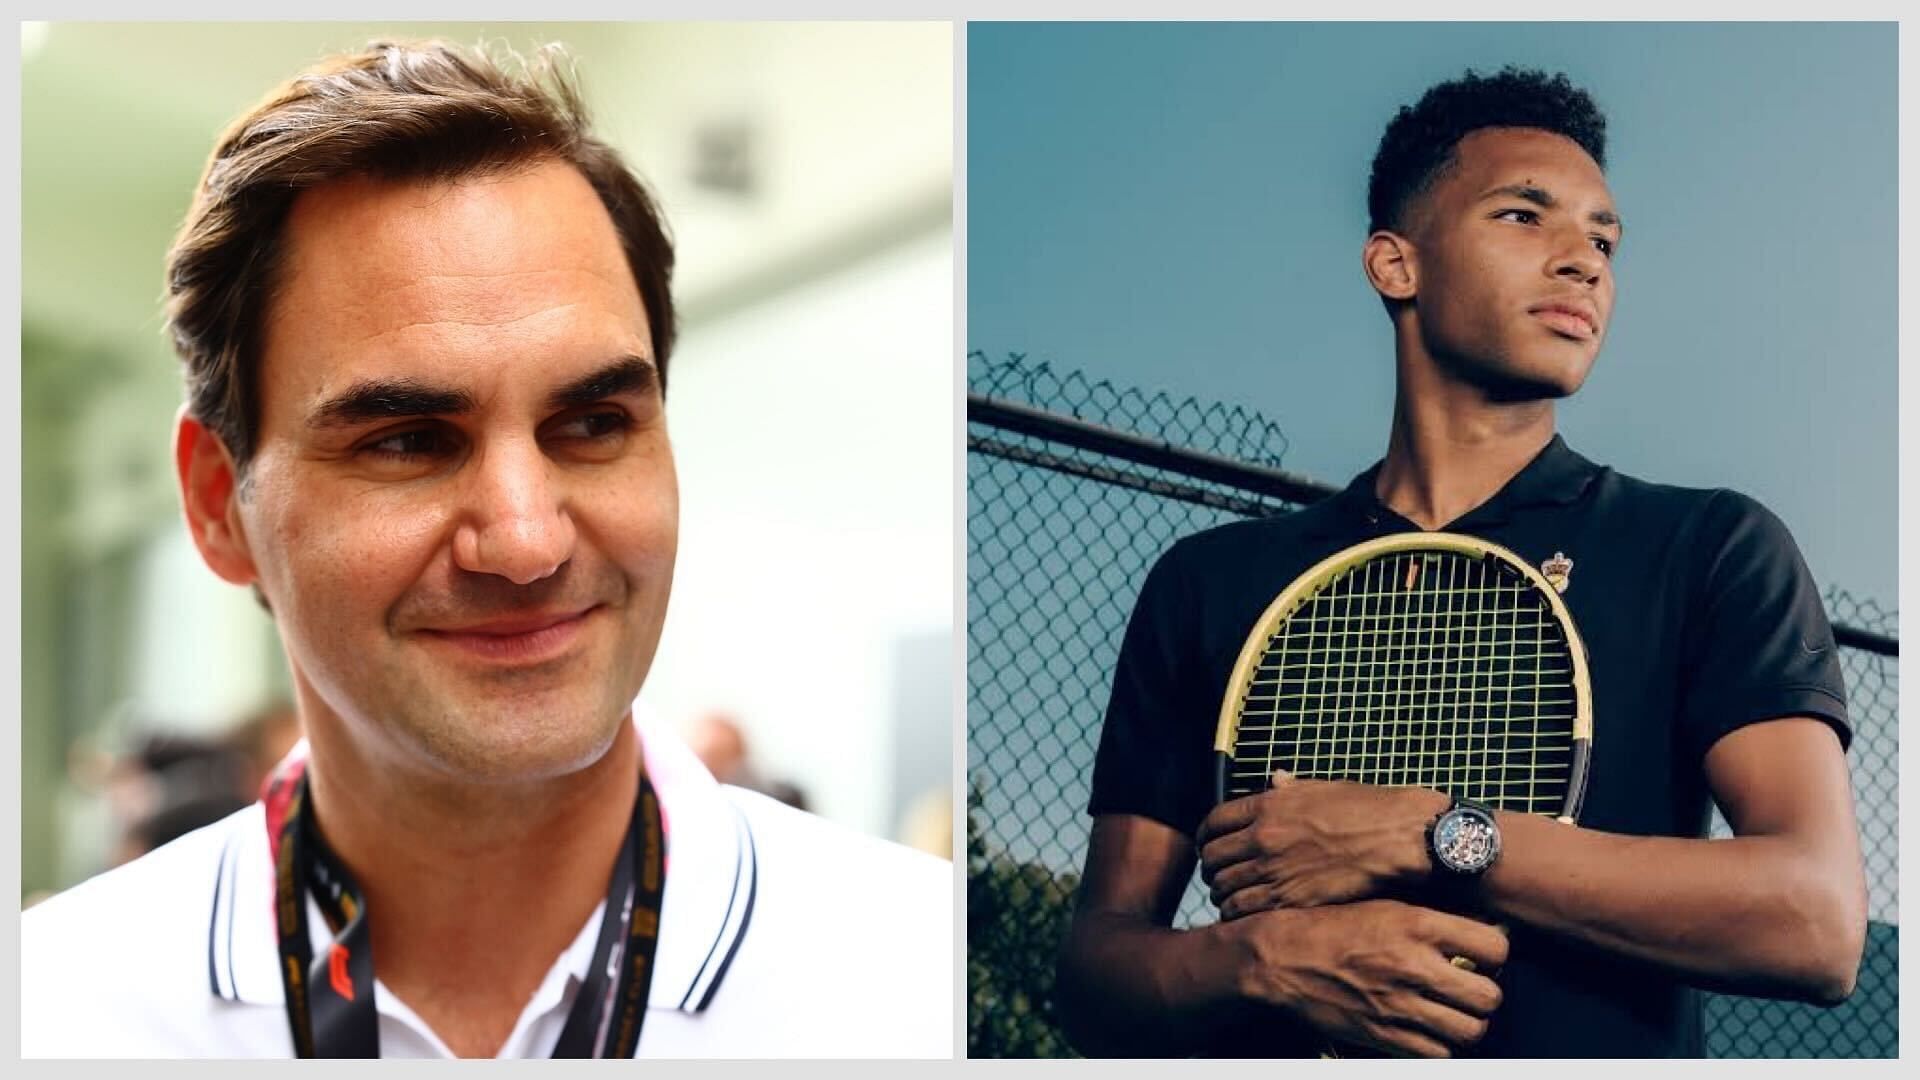 Roger Federer (L) and Felix Auger-Aliassime (R)